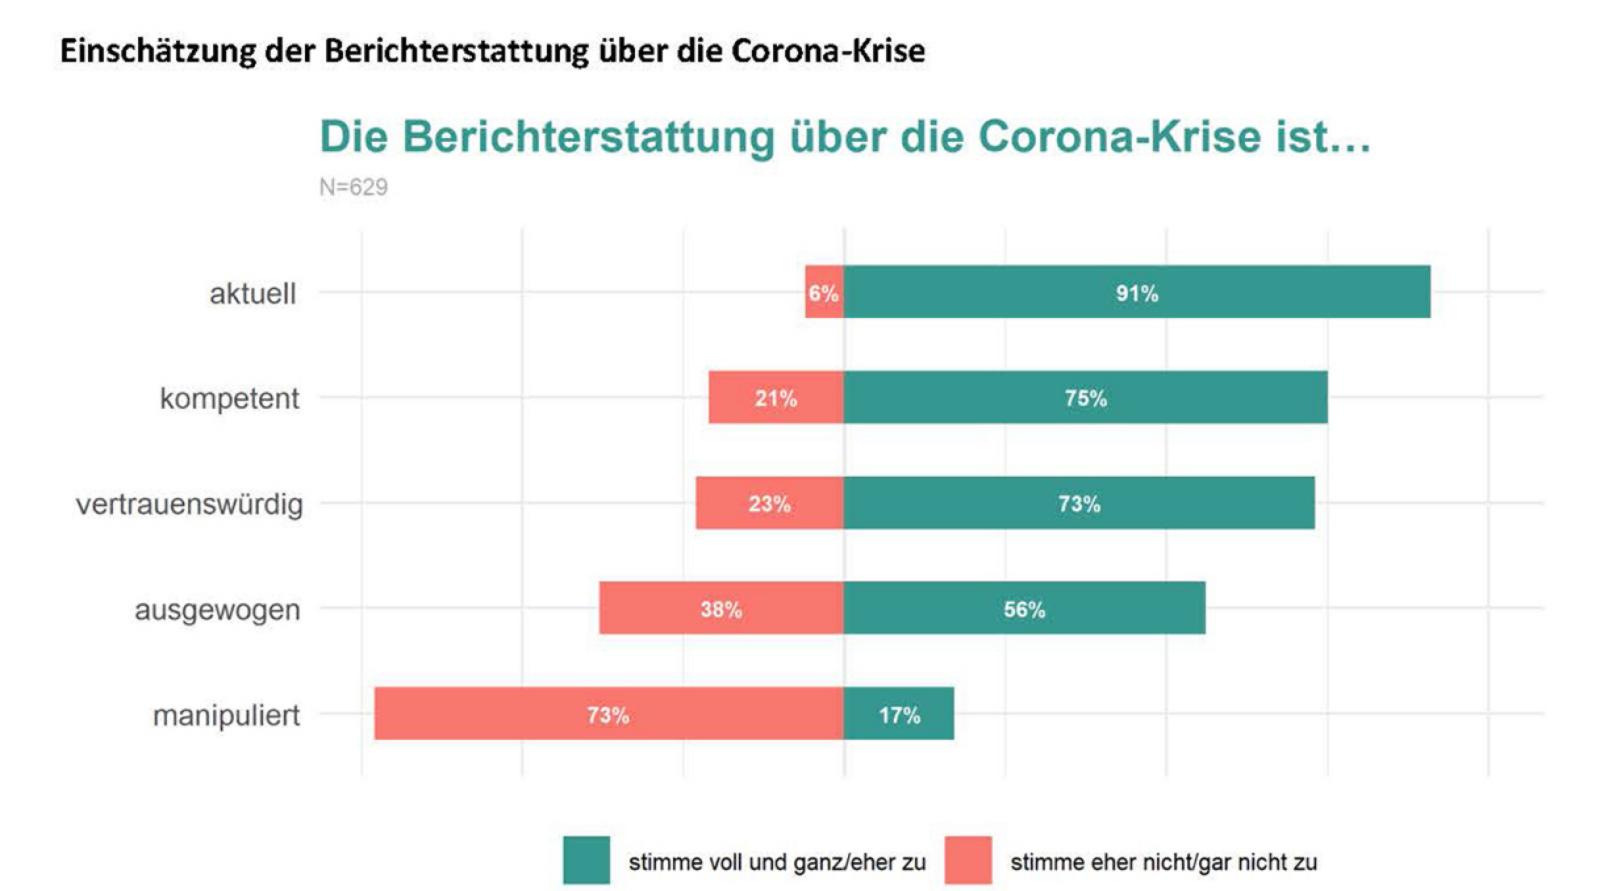 Die meisten Menschen im Münsterland halten die Corona-Berichterstattung für vertrauenswürdig und fühlen sich aktuell und kompetent informiert. (Grafik: Institut für Kommunikationswissenschaft WWU)